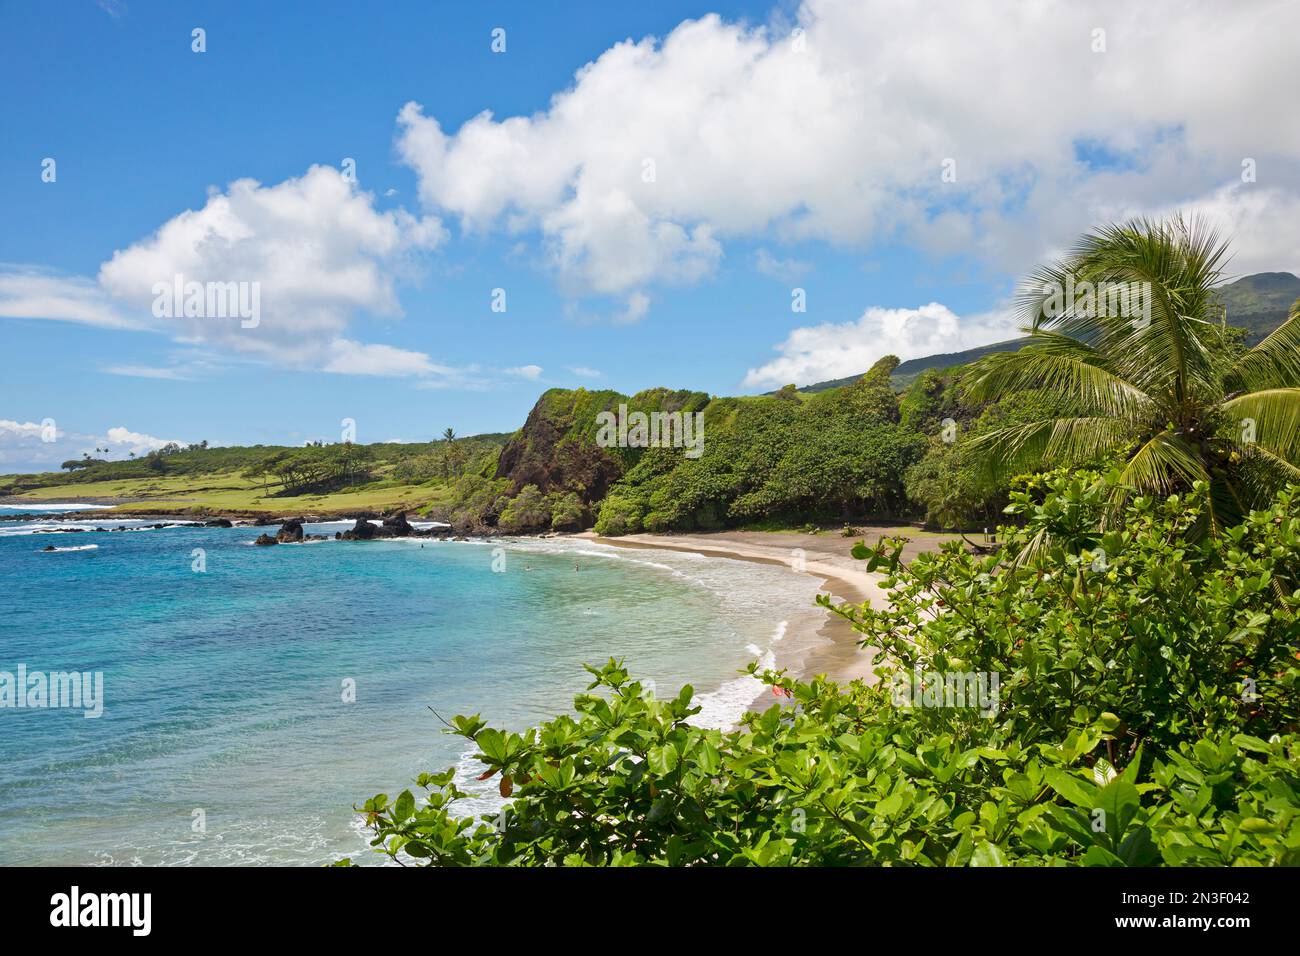 Belle plage de Hamoa le long de la côte de Maui ; Hana, Maui, Hawaï, États-Unis d'Amérique Banque D'Images